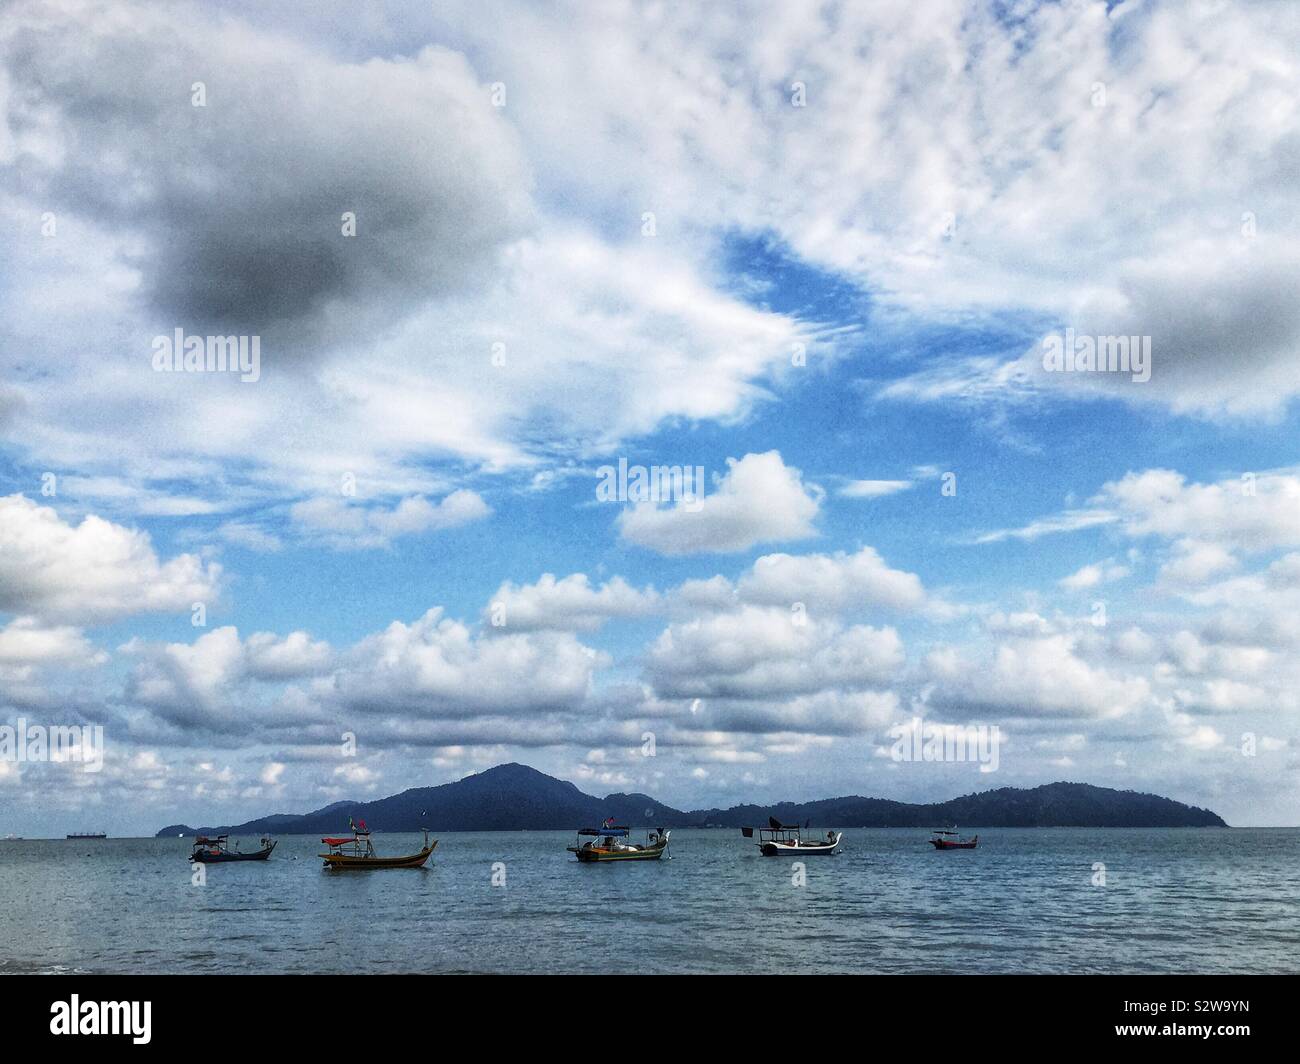 Fishing boats, Teluk Senangin Beach, near Lumut, Perak, Malaysia Stock Photo